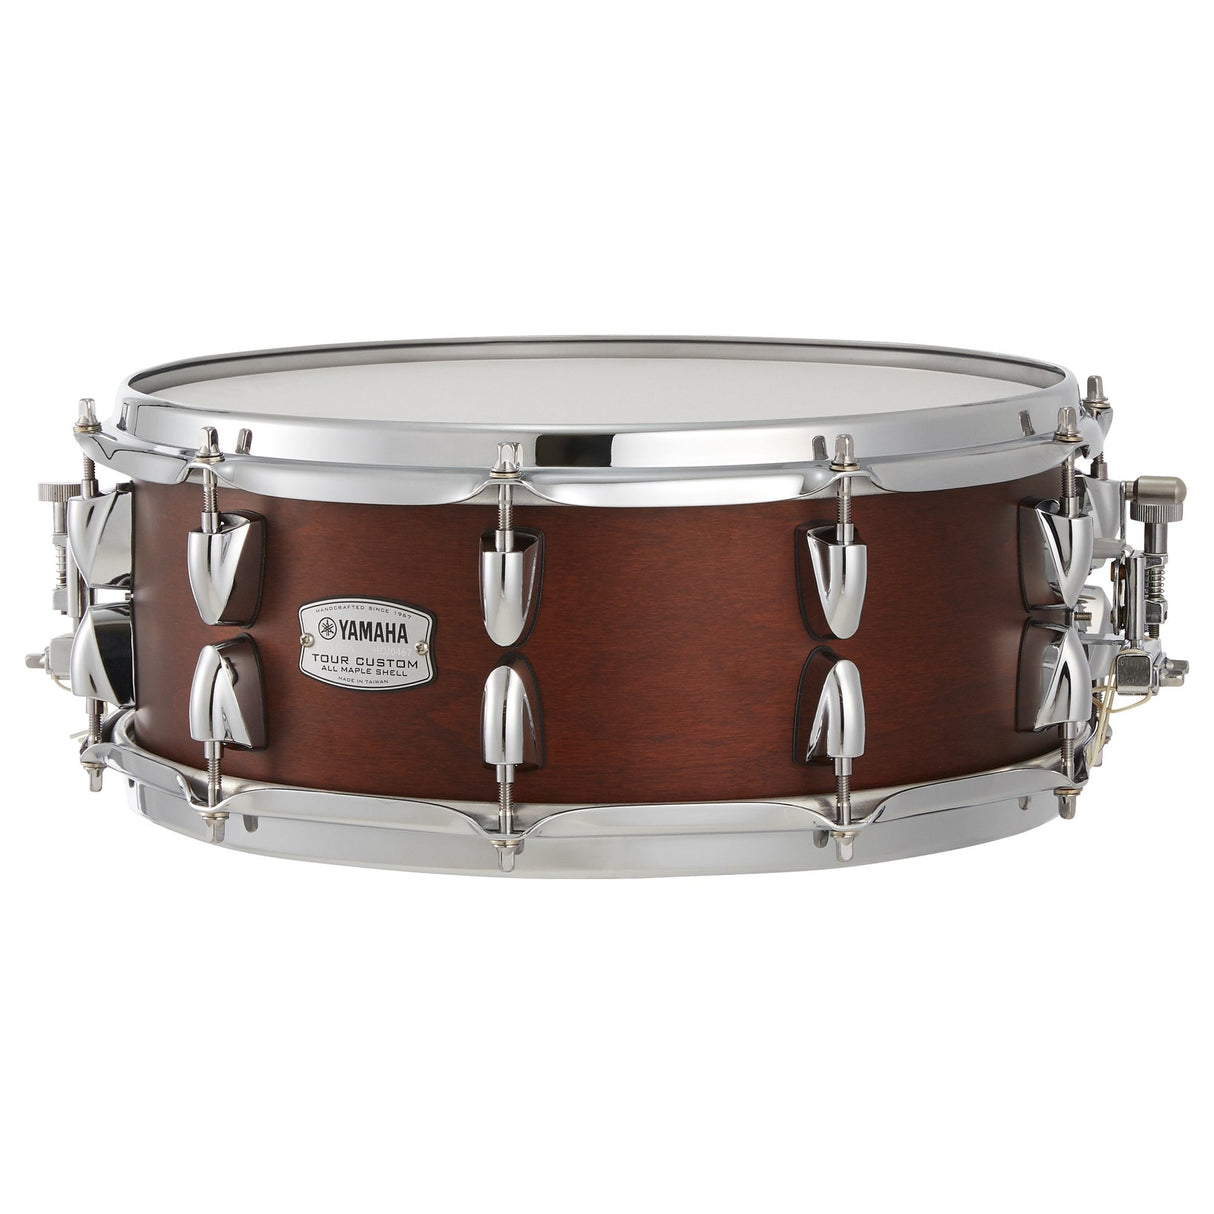 Yamaha Tour Custom Snare Drum 14x5.5 Chocolate Satin